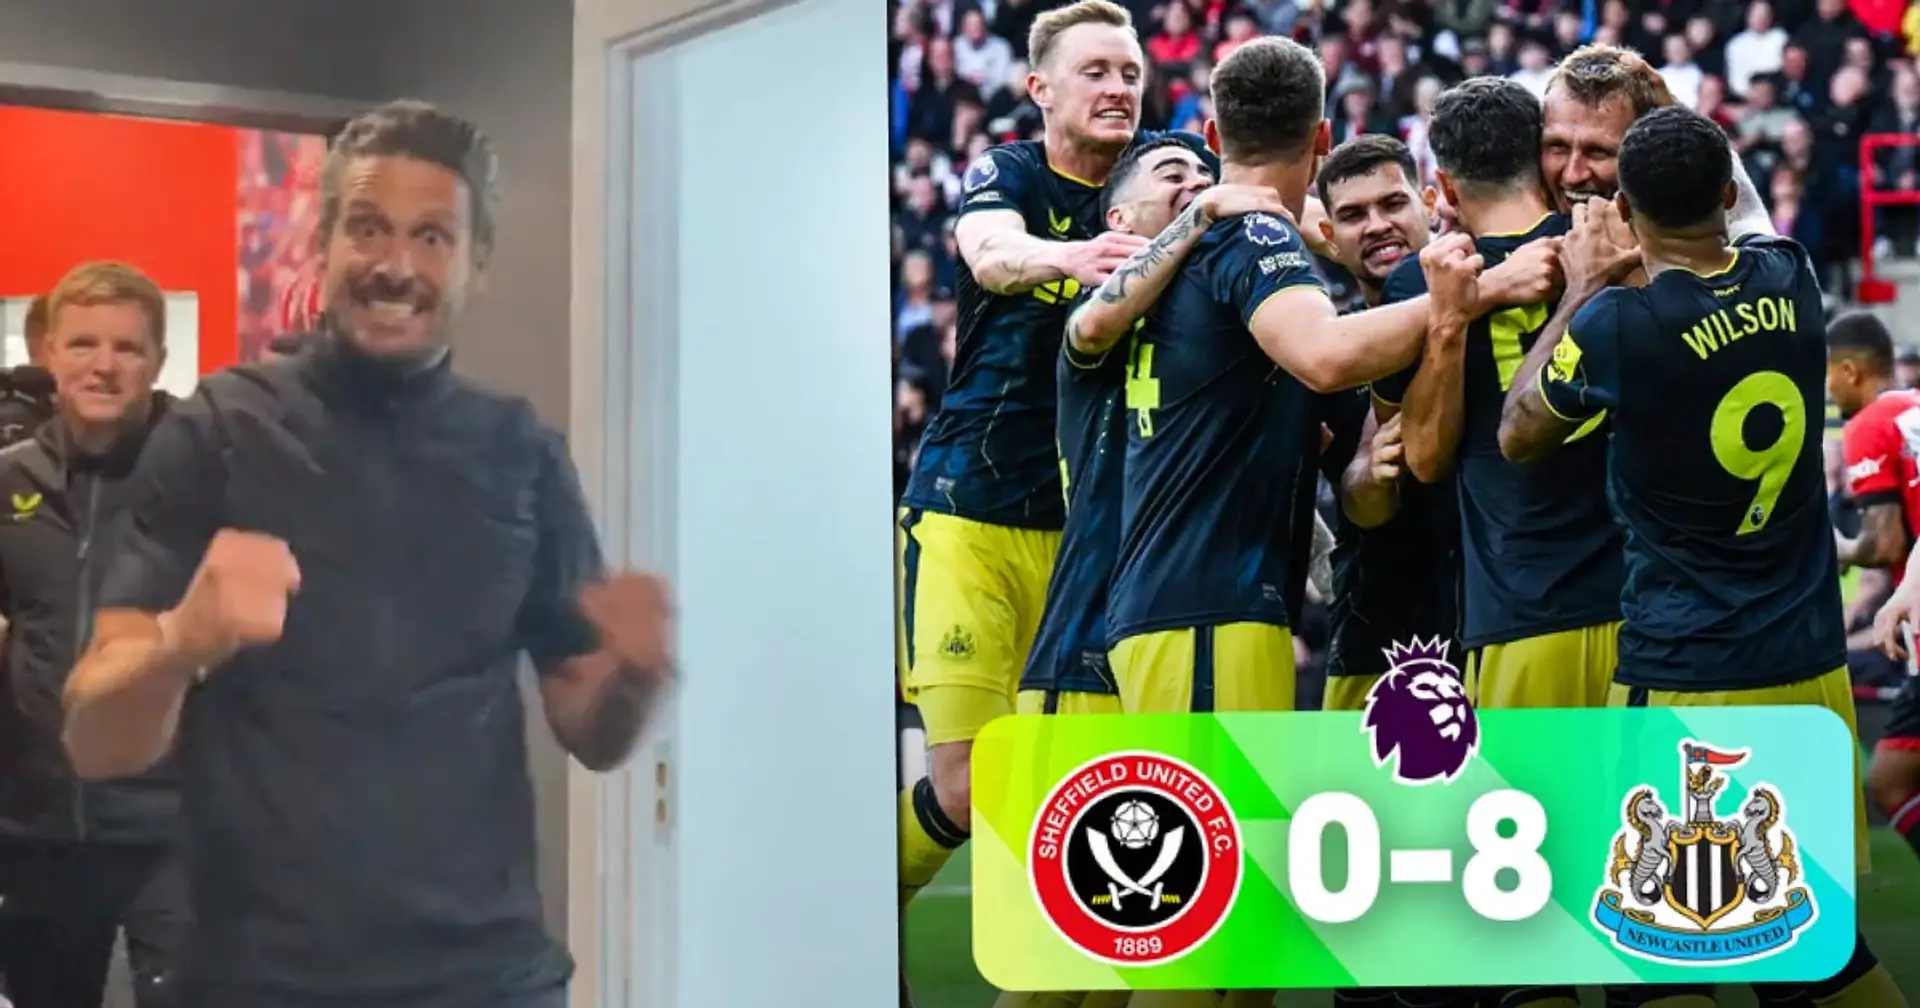 Filmé: les joueurs de Newcastle dans le vestiaire après avoir battu Sheffield United 8-0